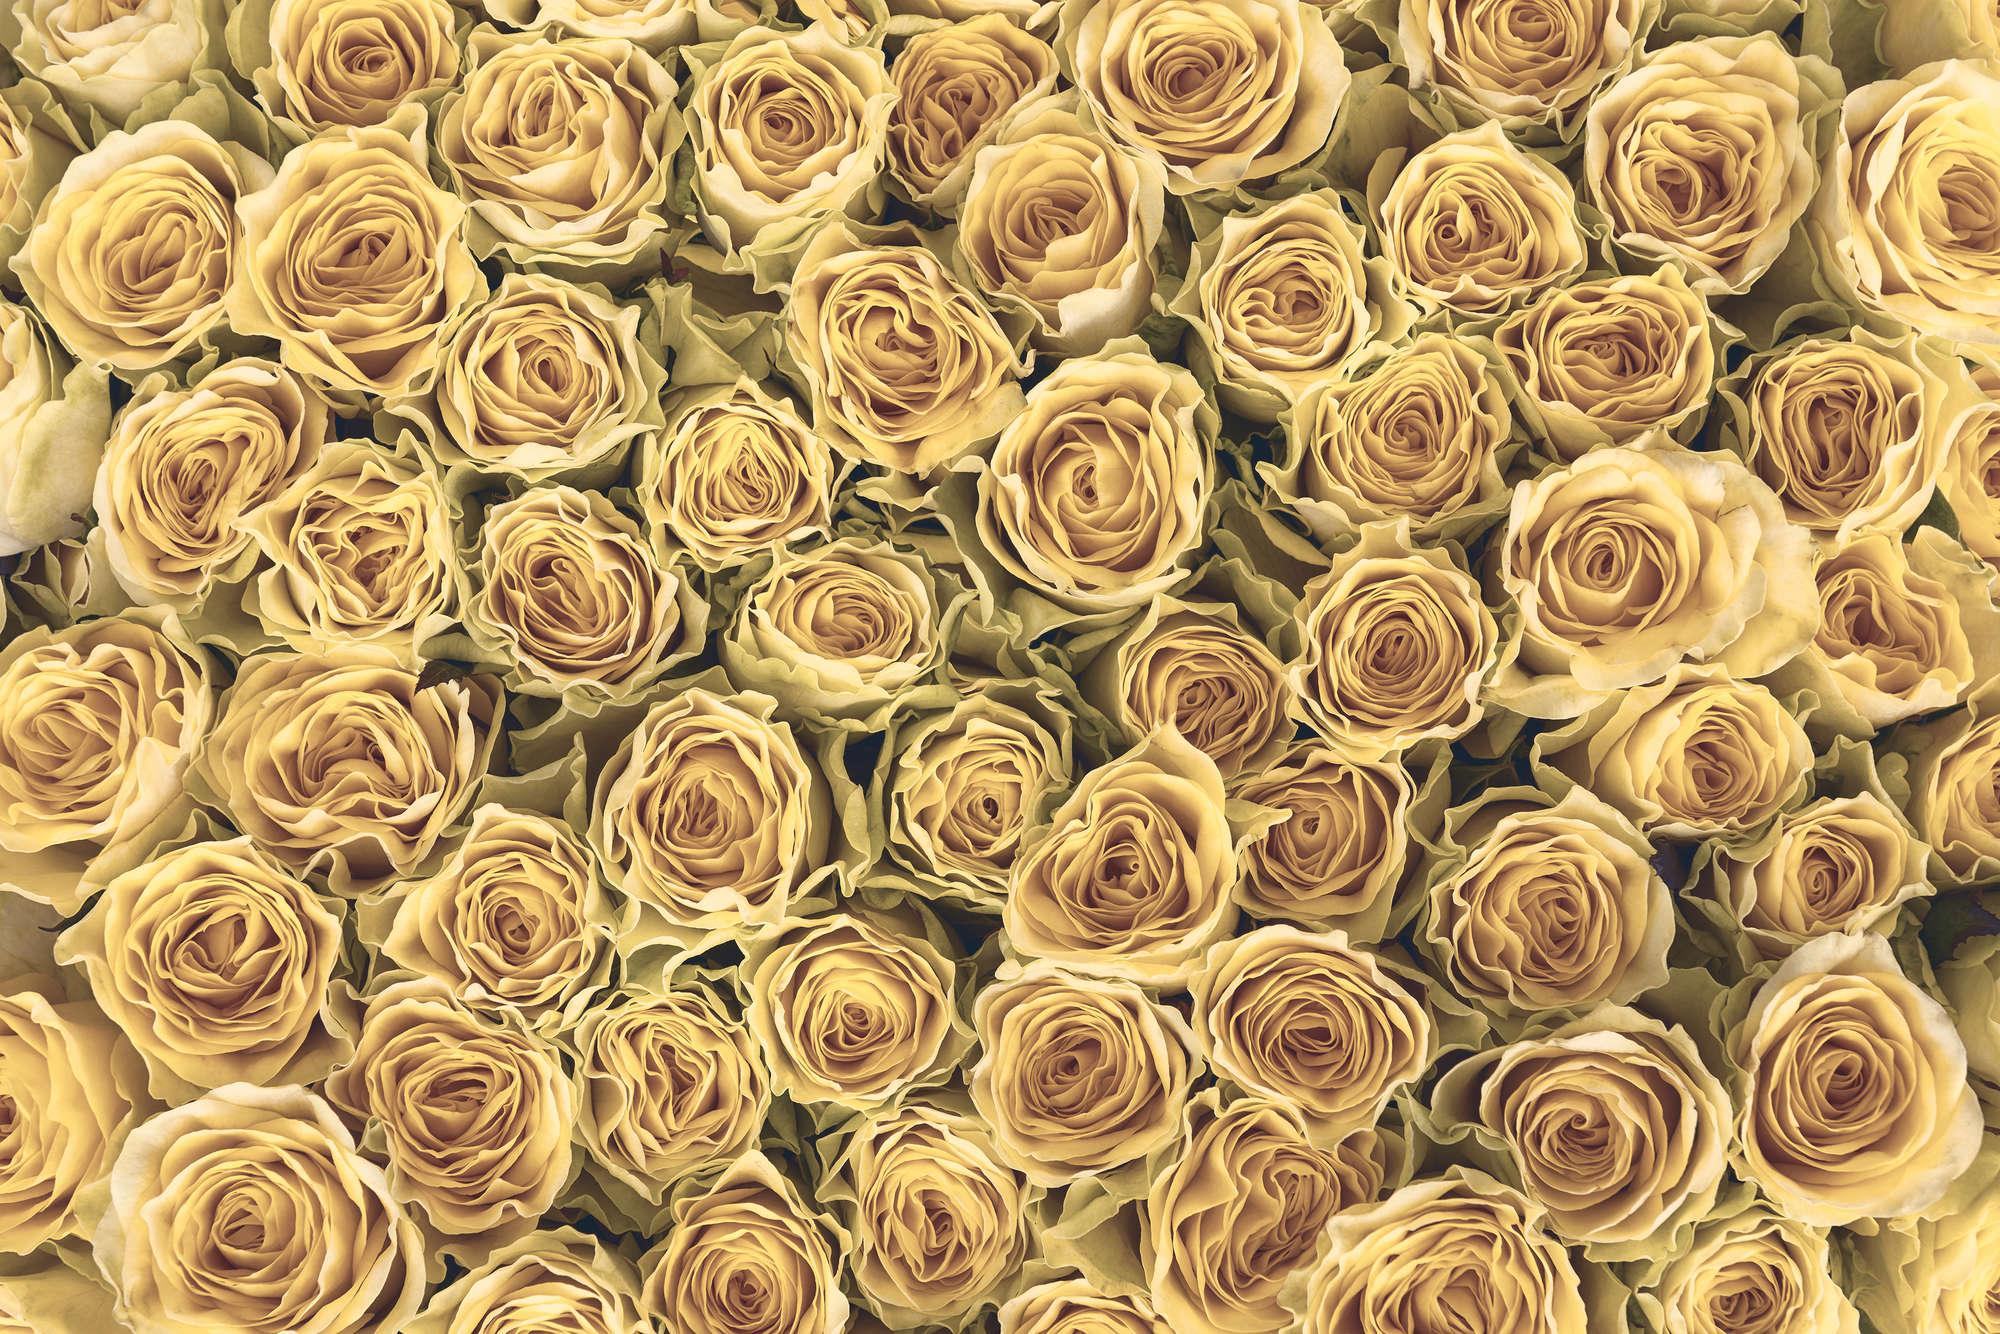             Papier peint végétal roses dorées sur intissé nacré lisse
        